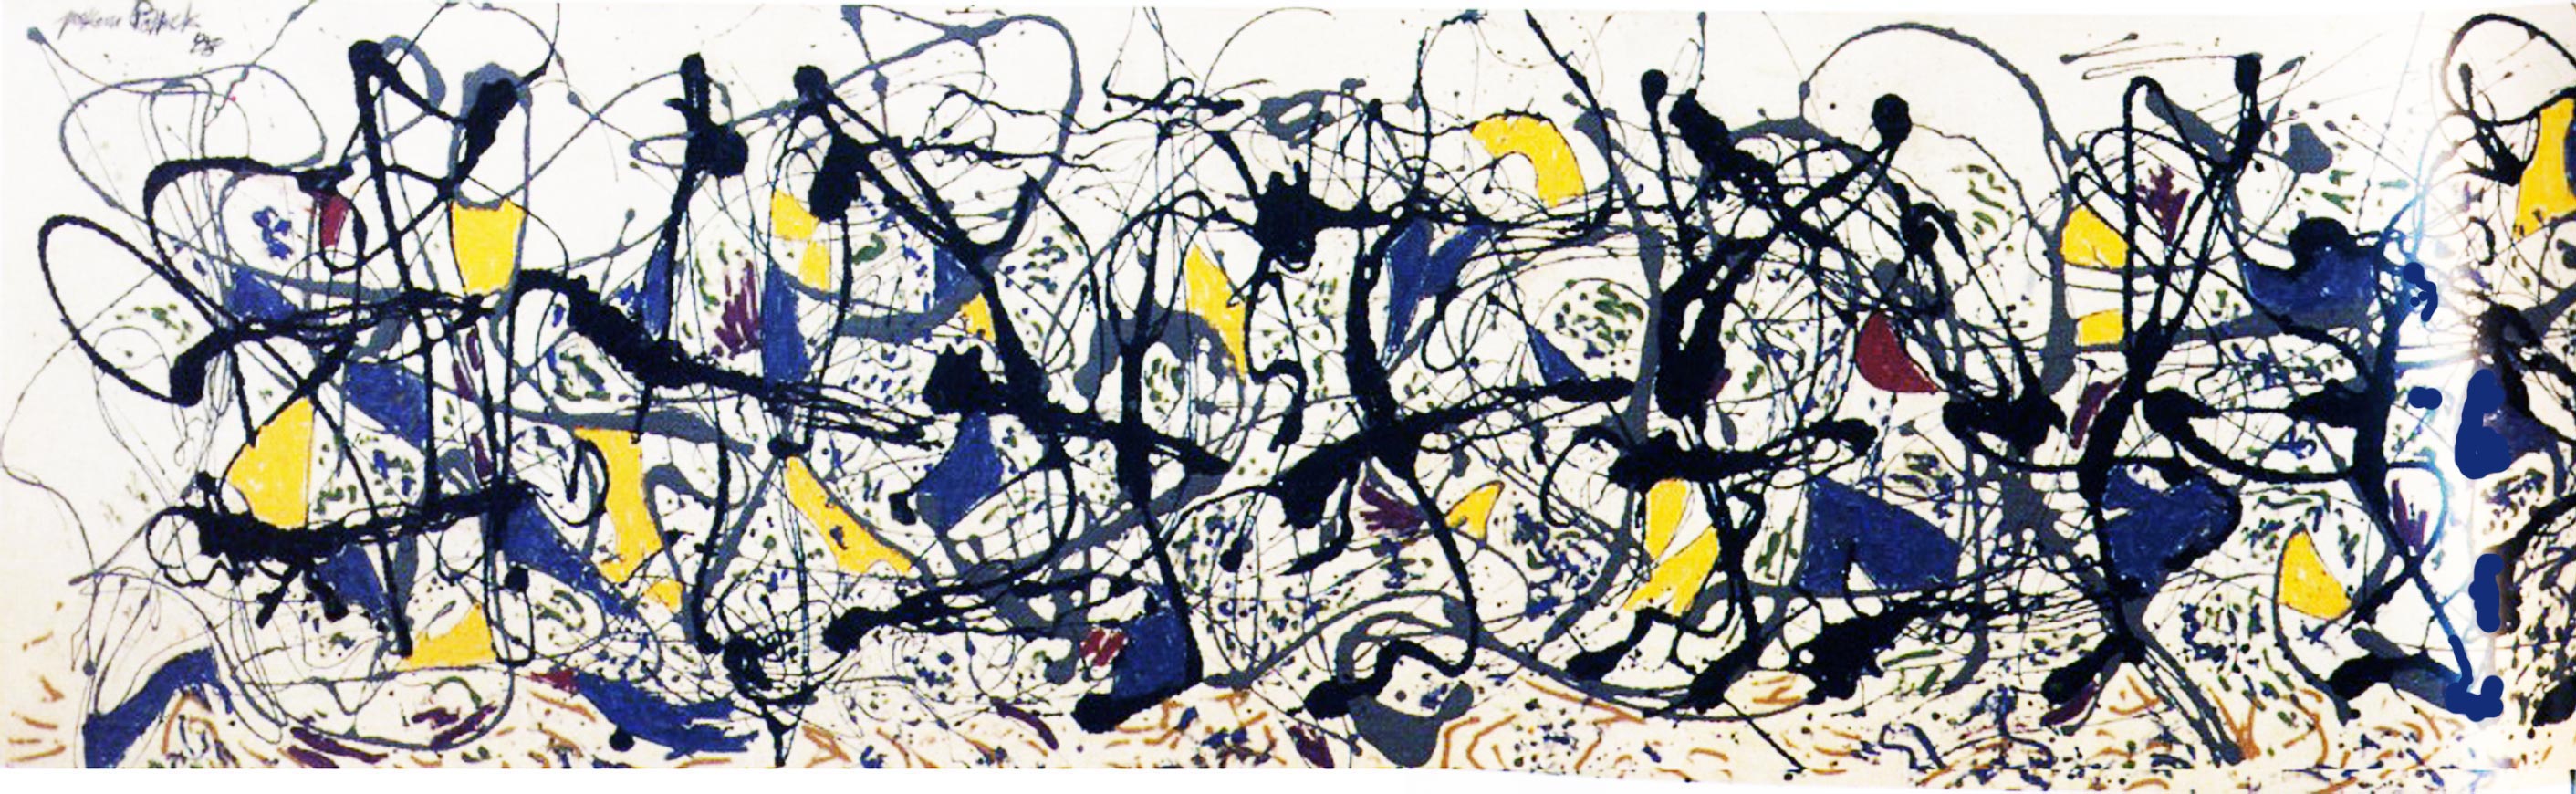 Qui est Jackson Pollock ? alias Jack the Dripper